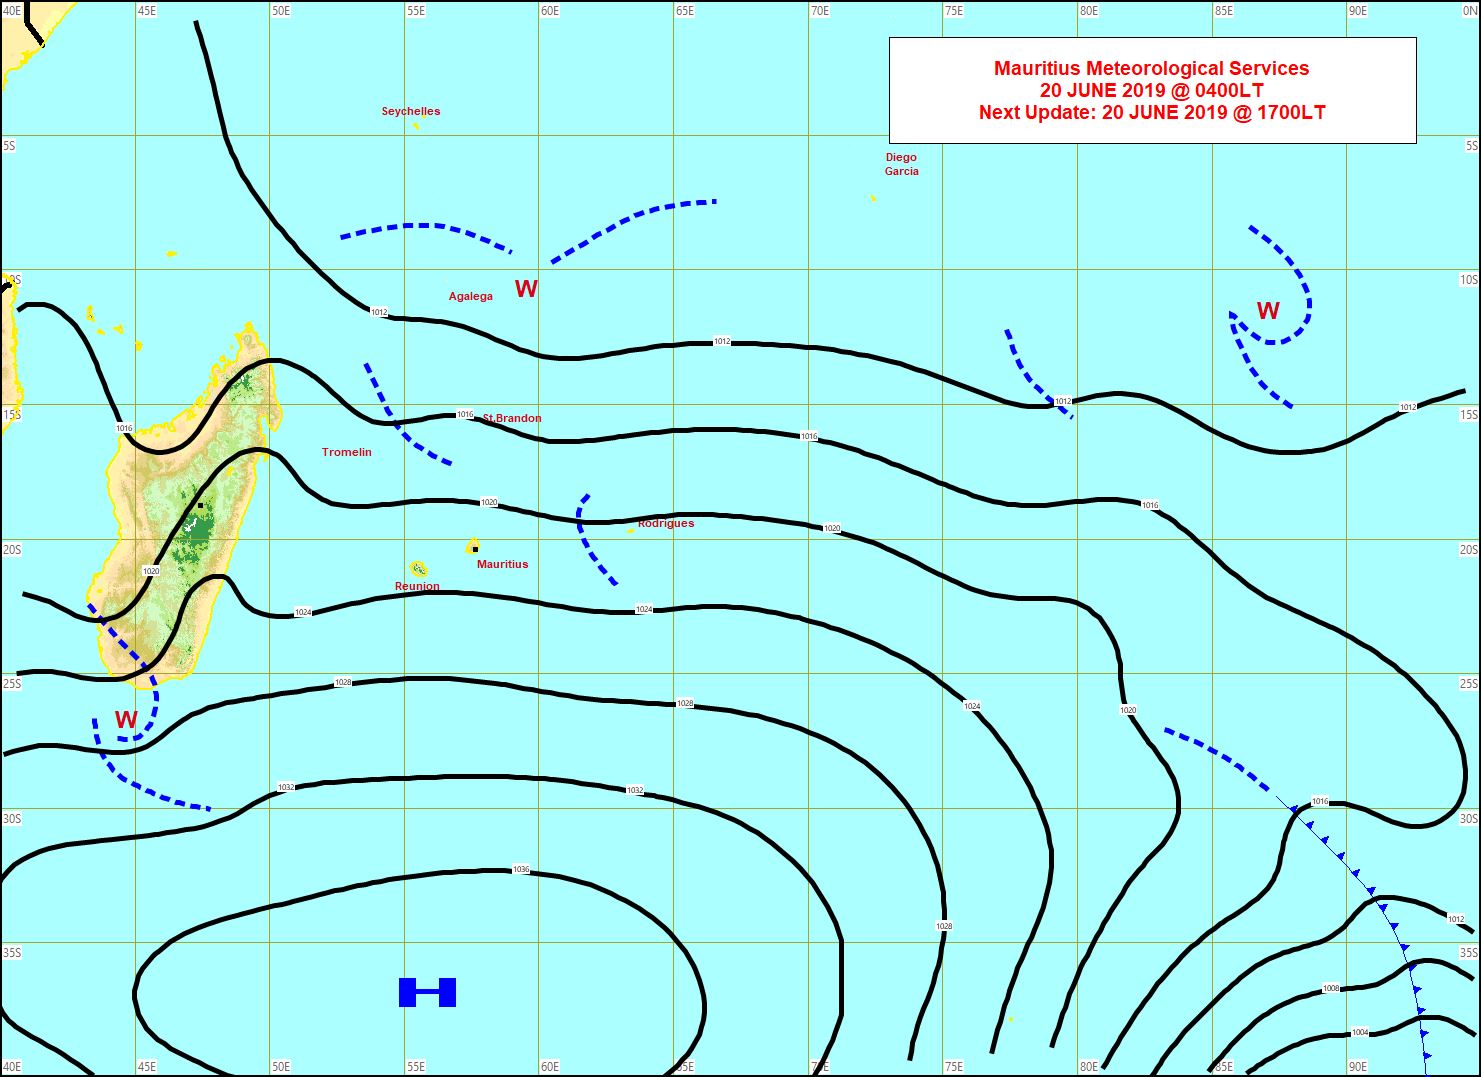 Analyse de surface ce matin. L'anticyclone(H) à 1040hpa est bien positionné au sud de nos îles. MMS